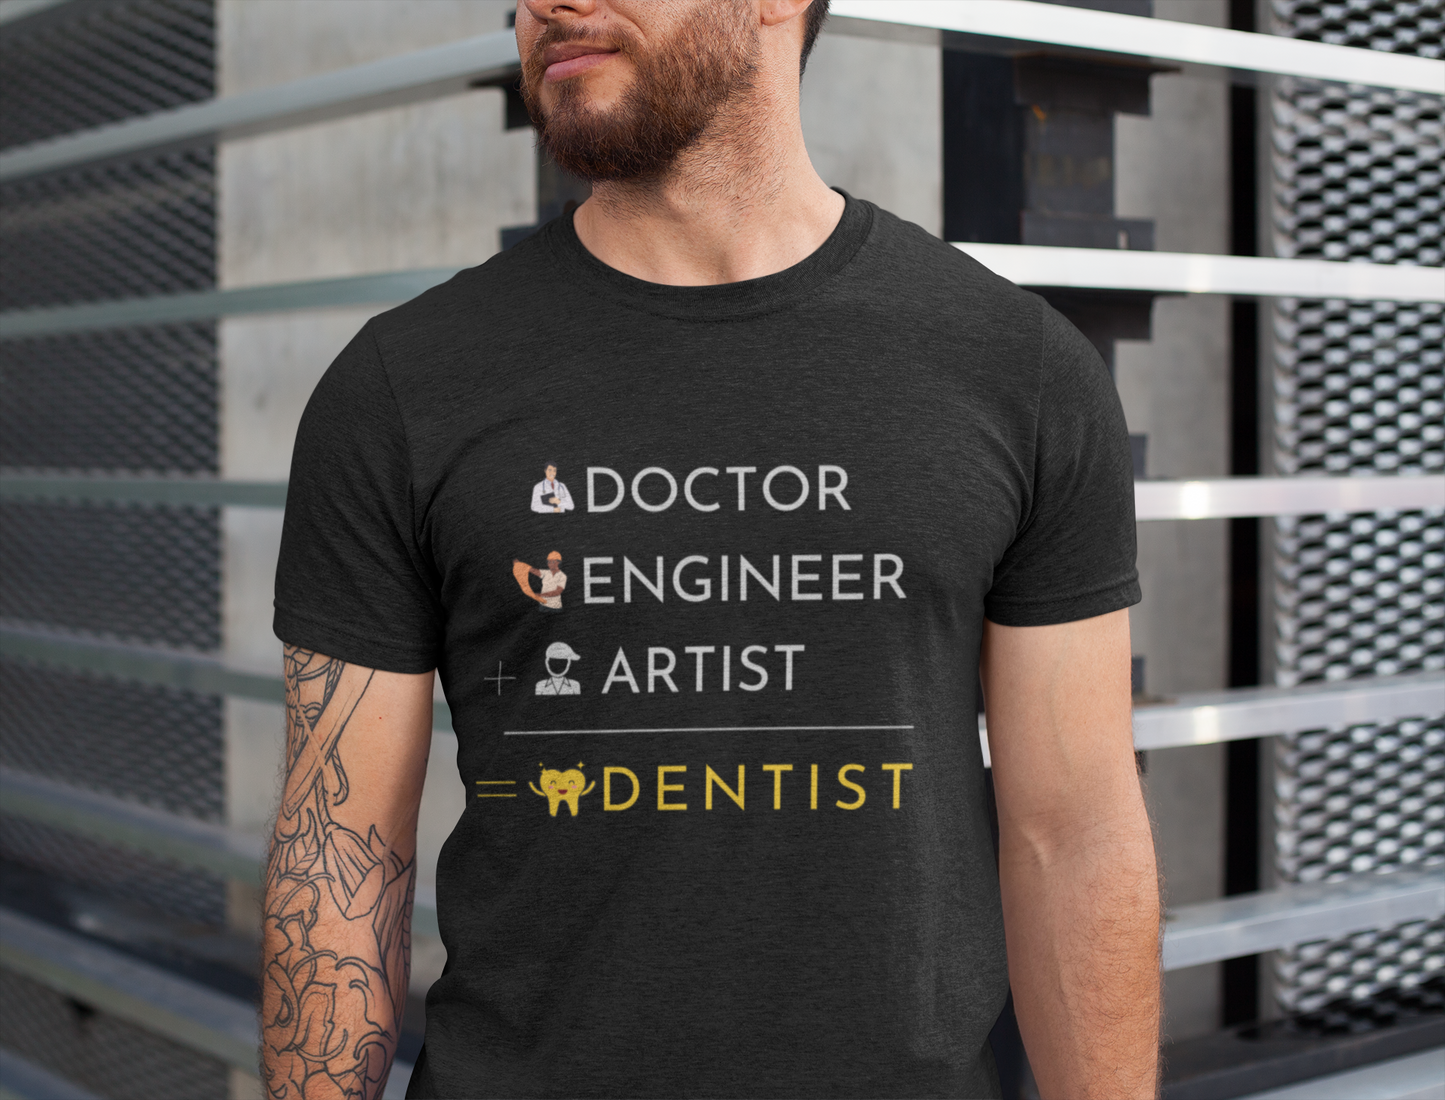 Dentist shirt